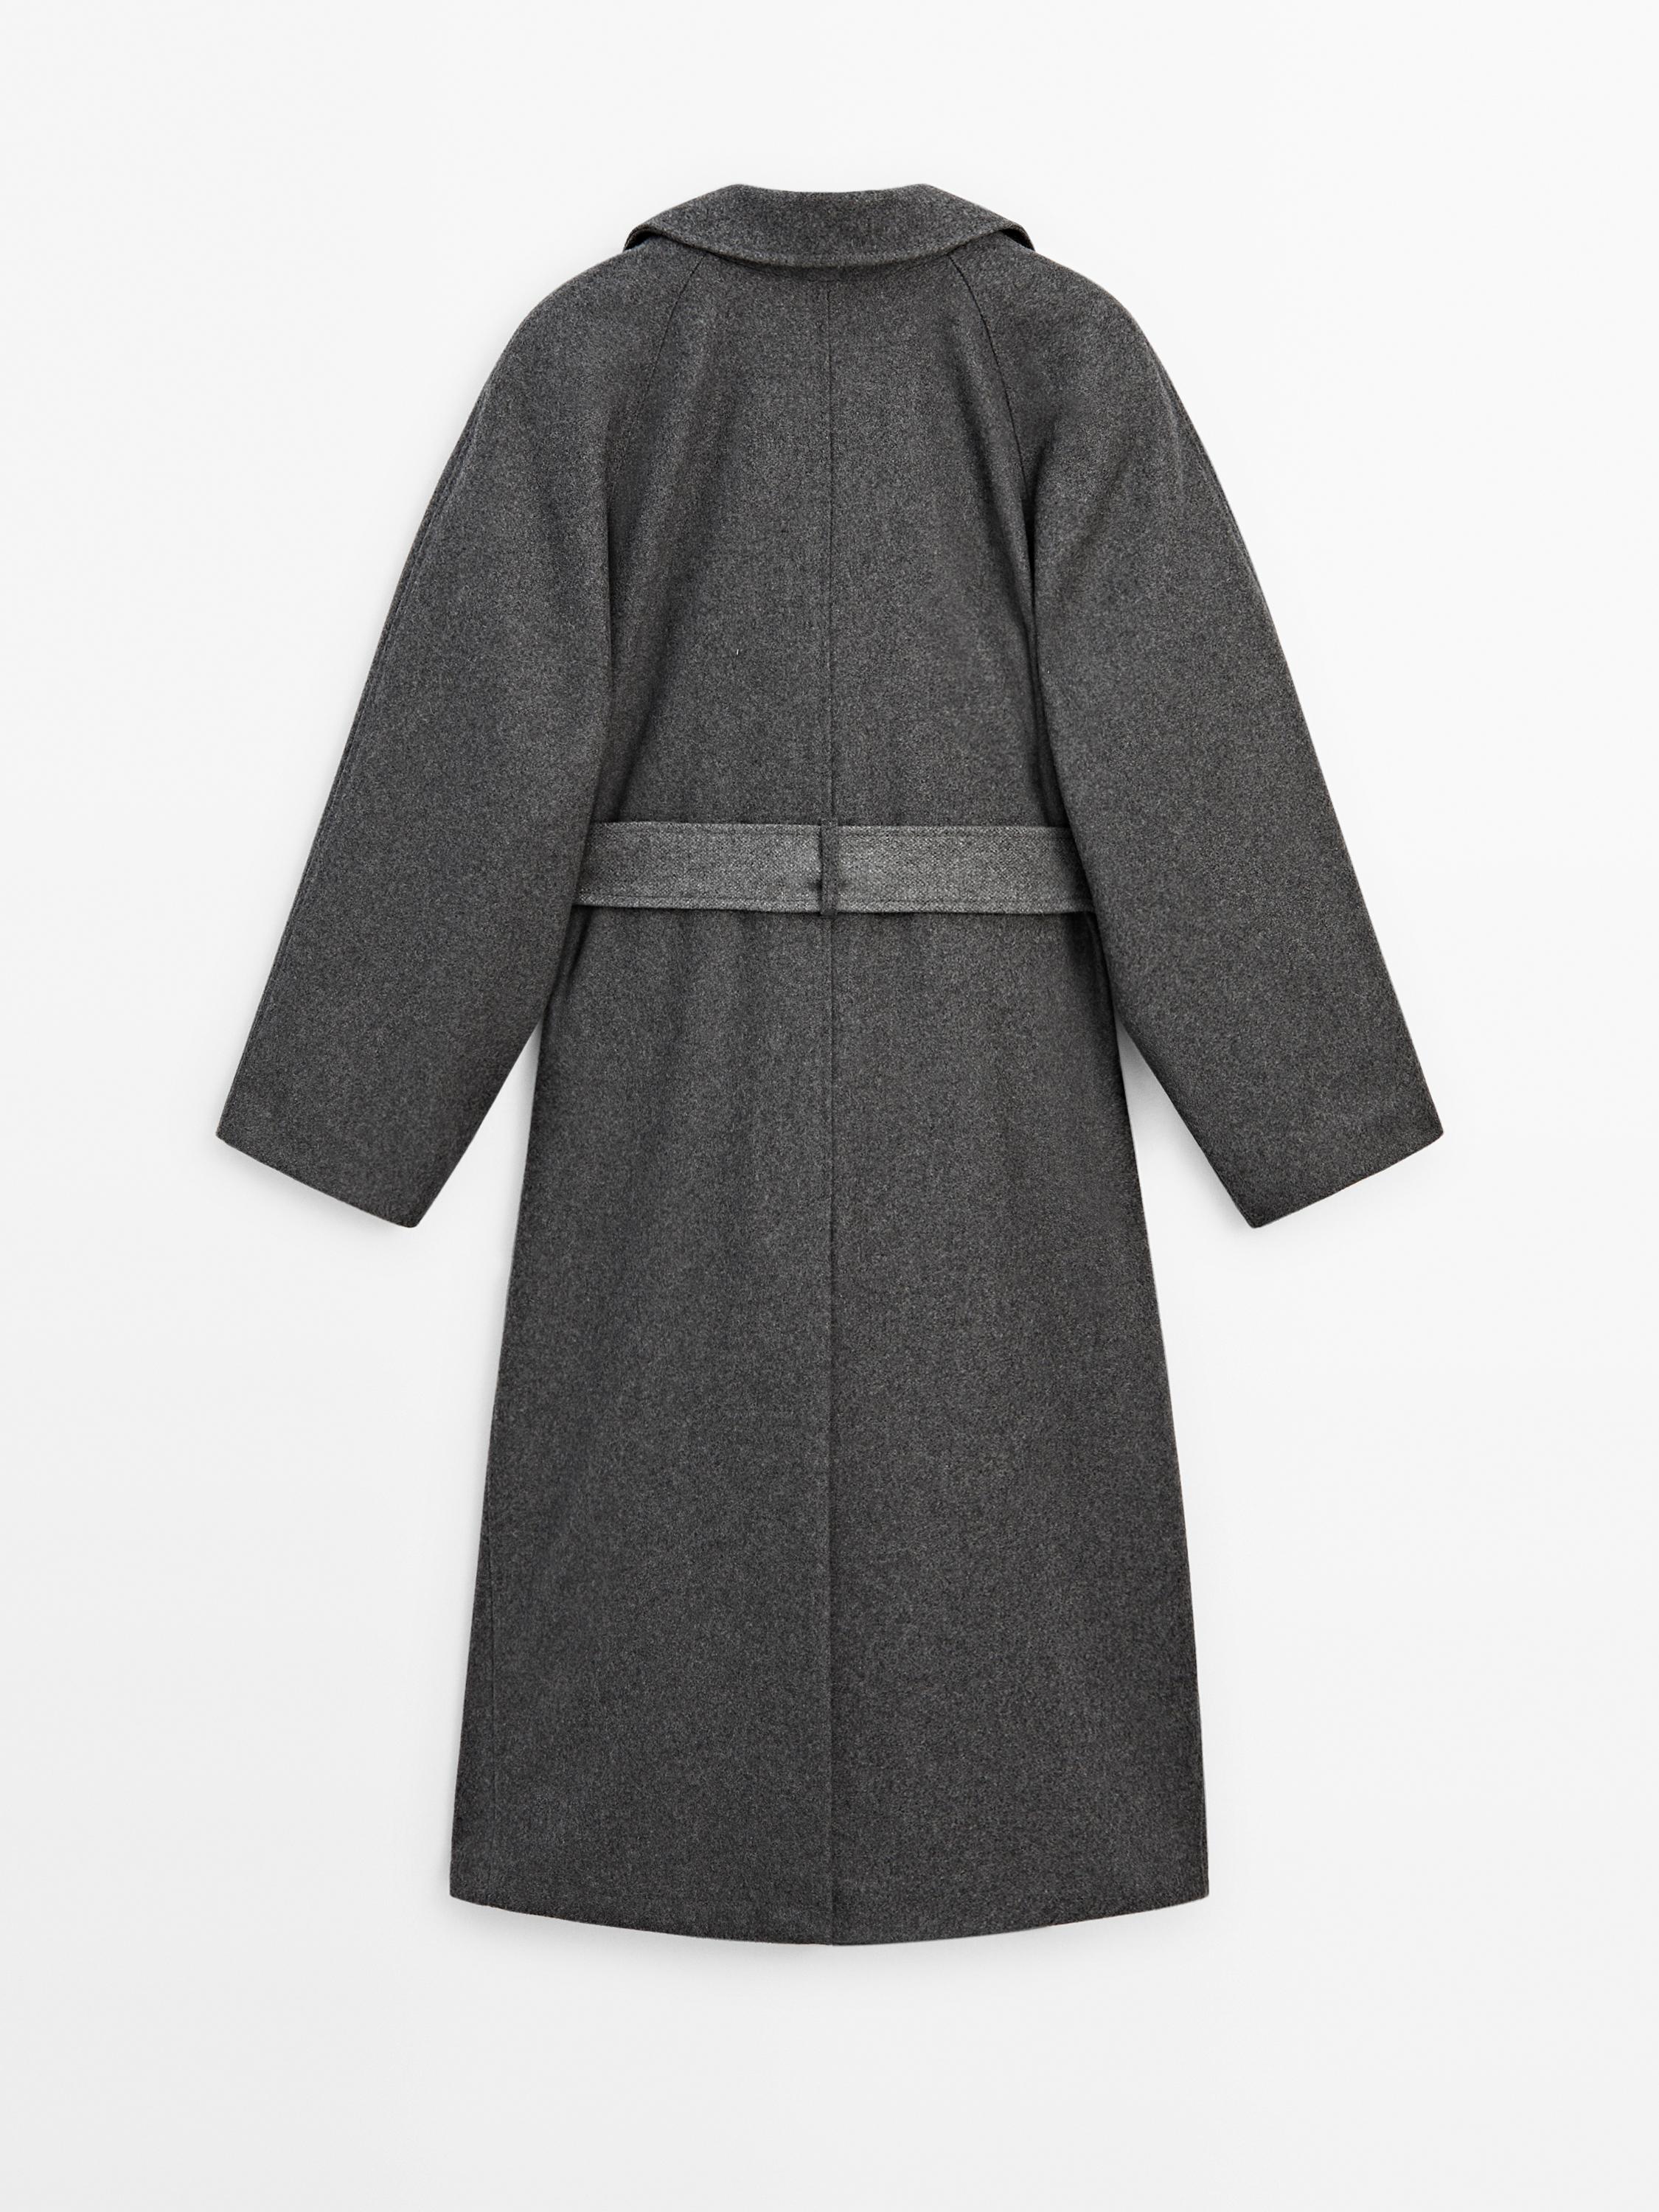 Belted oversize coat - Studio - Gray | ZARA United States